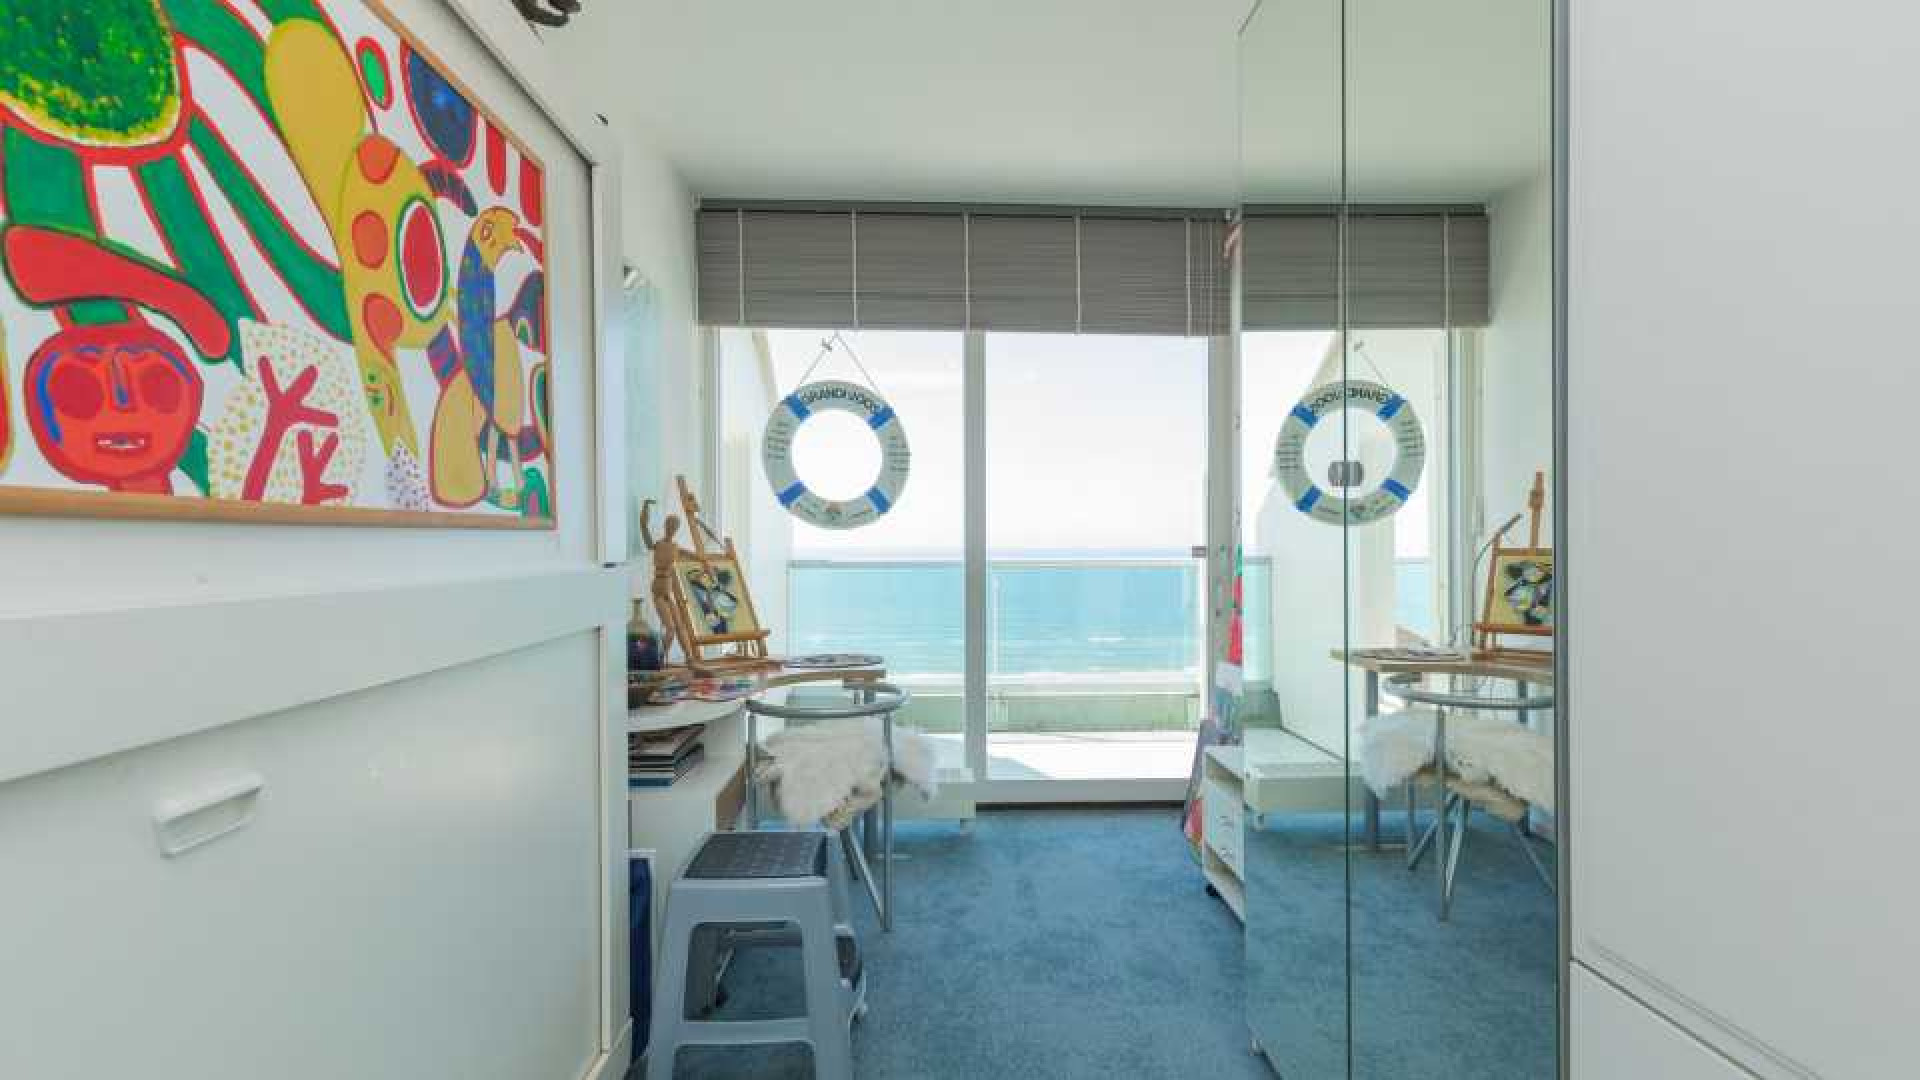 Binnenkijken in dit prachtige penthouse met zeezicht van Ronald Koeman. Zie foto's